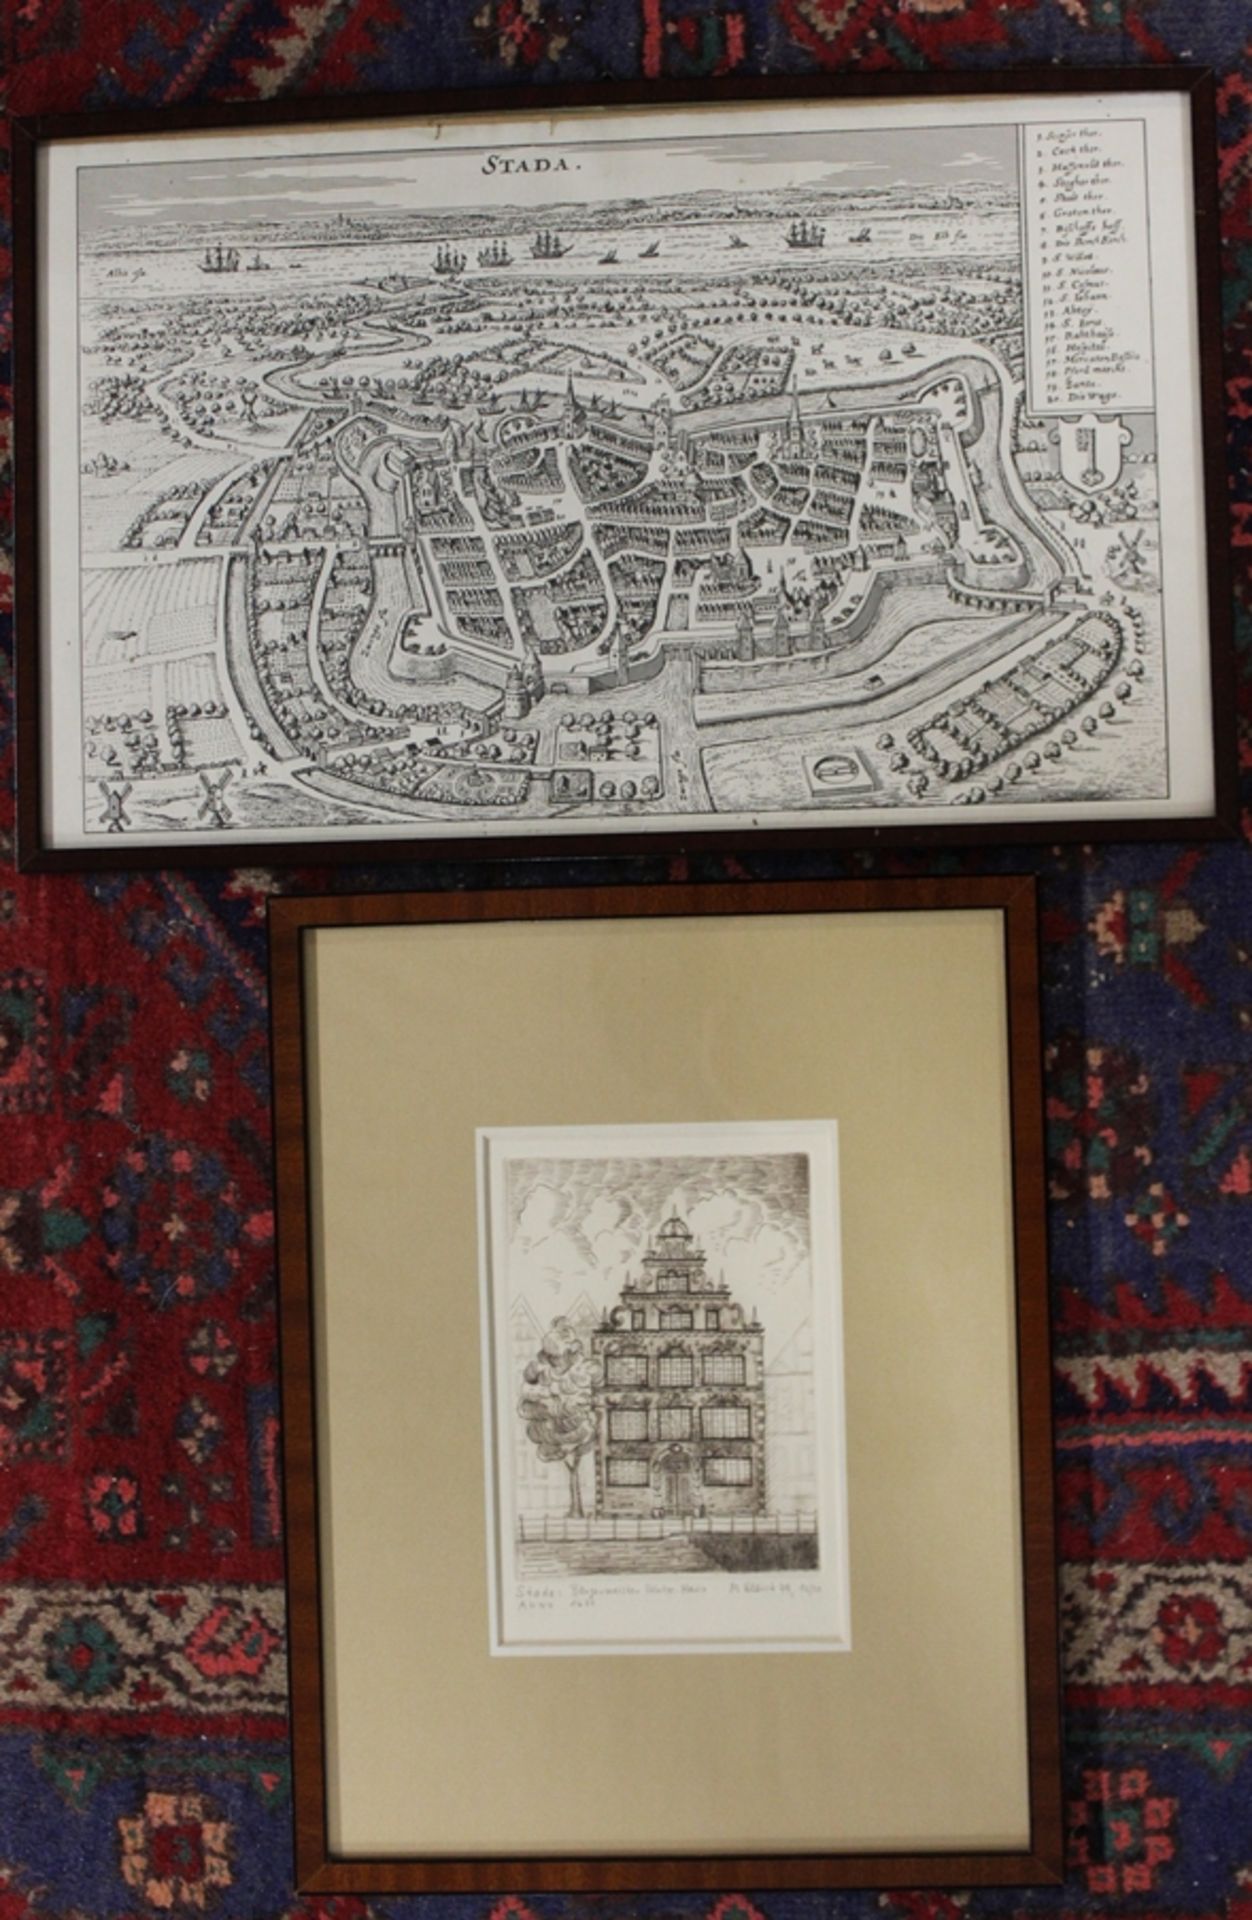 Kartengrafik "Stade", sowie Radierung von M.Kleist "Bürgermeister Hintze Haus, Stade", je gerahmt/G